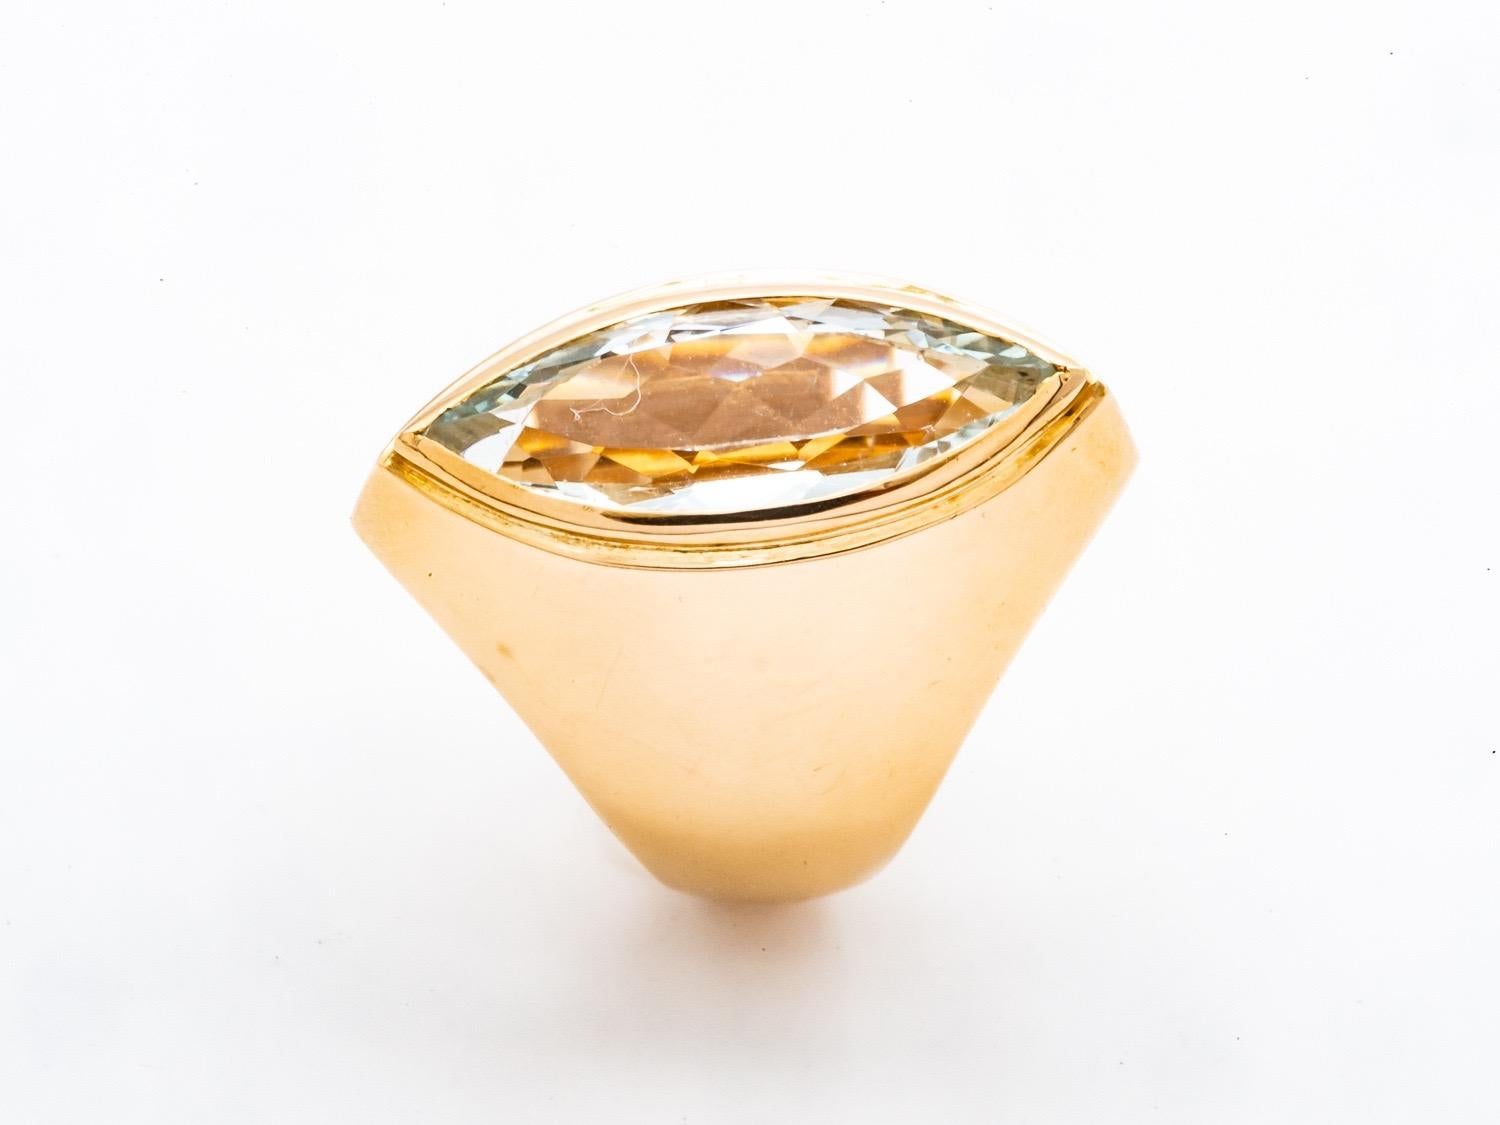 Entdecken Sie diesen bemerkenswerten Ring aus 18 Karat Gold mit einem Aquamarin, der in einer wunderschönen Navette geschliffen ist. Dieser einzigartige Ring ist ein wahrer Schatz, der alle Blicke auf sich zieht und alle Blicke auf sich zieht.

Das